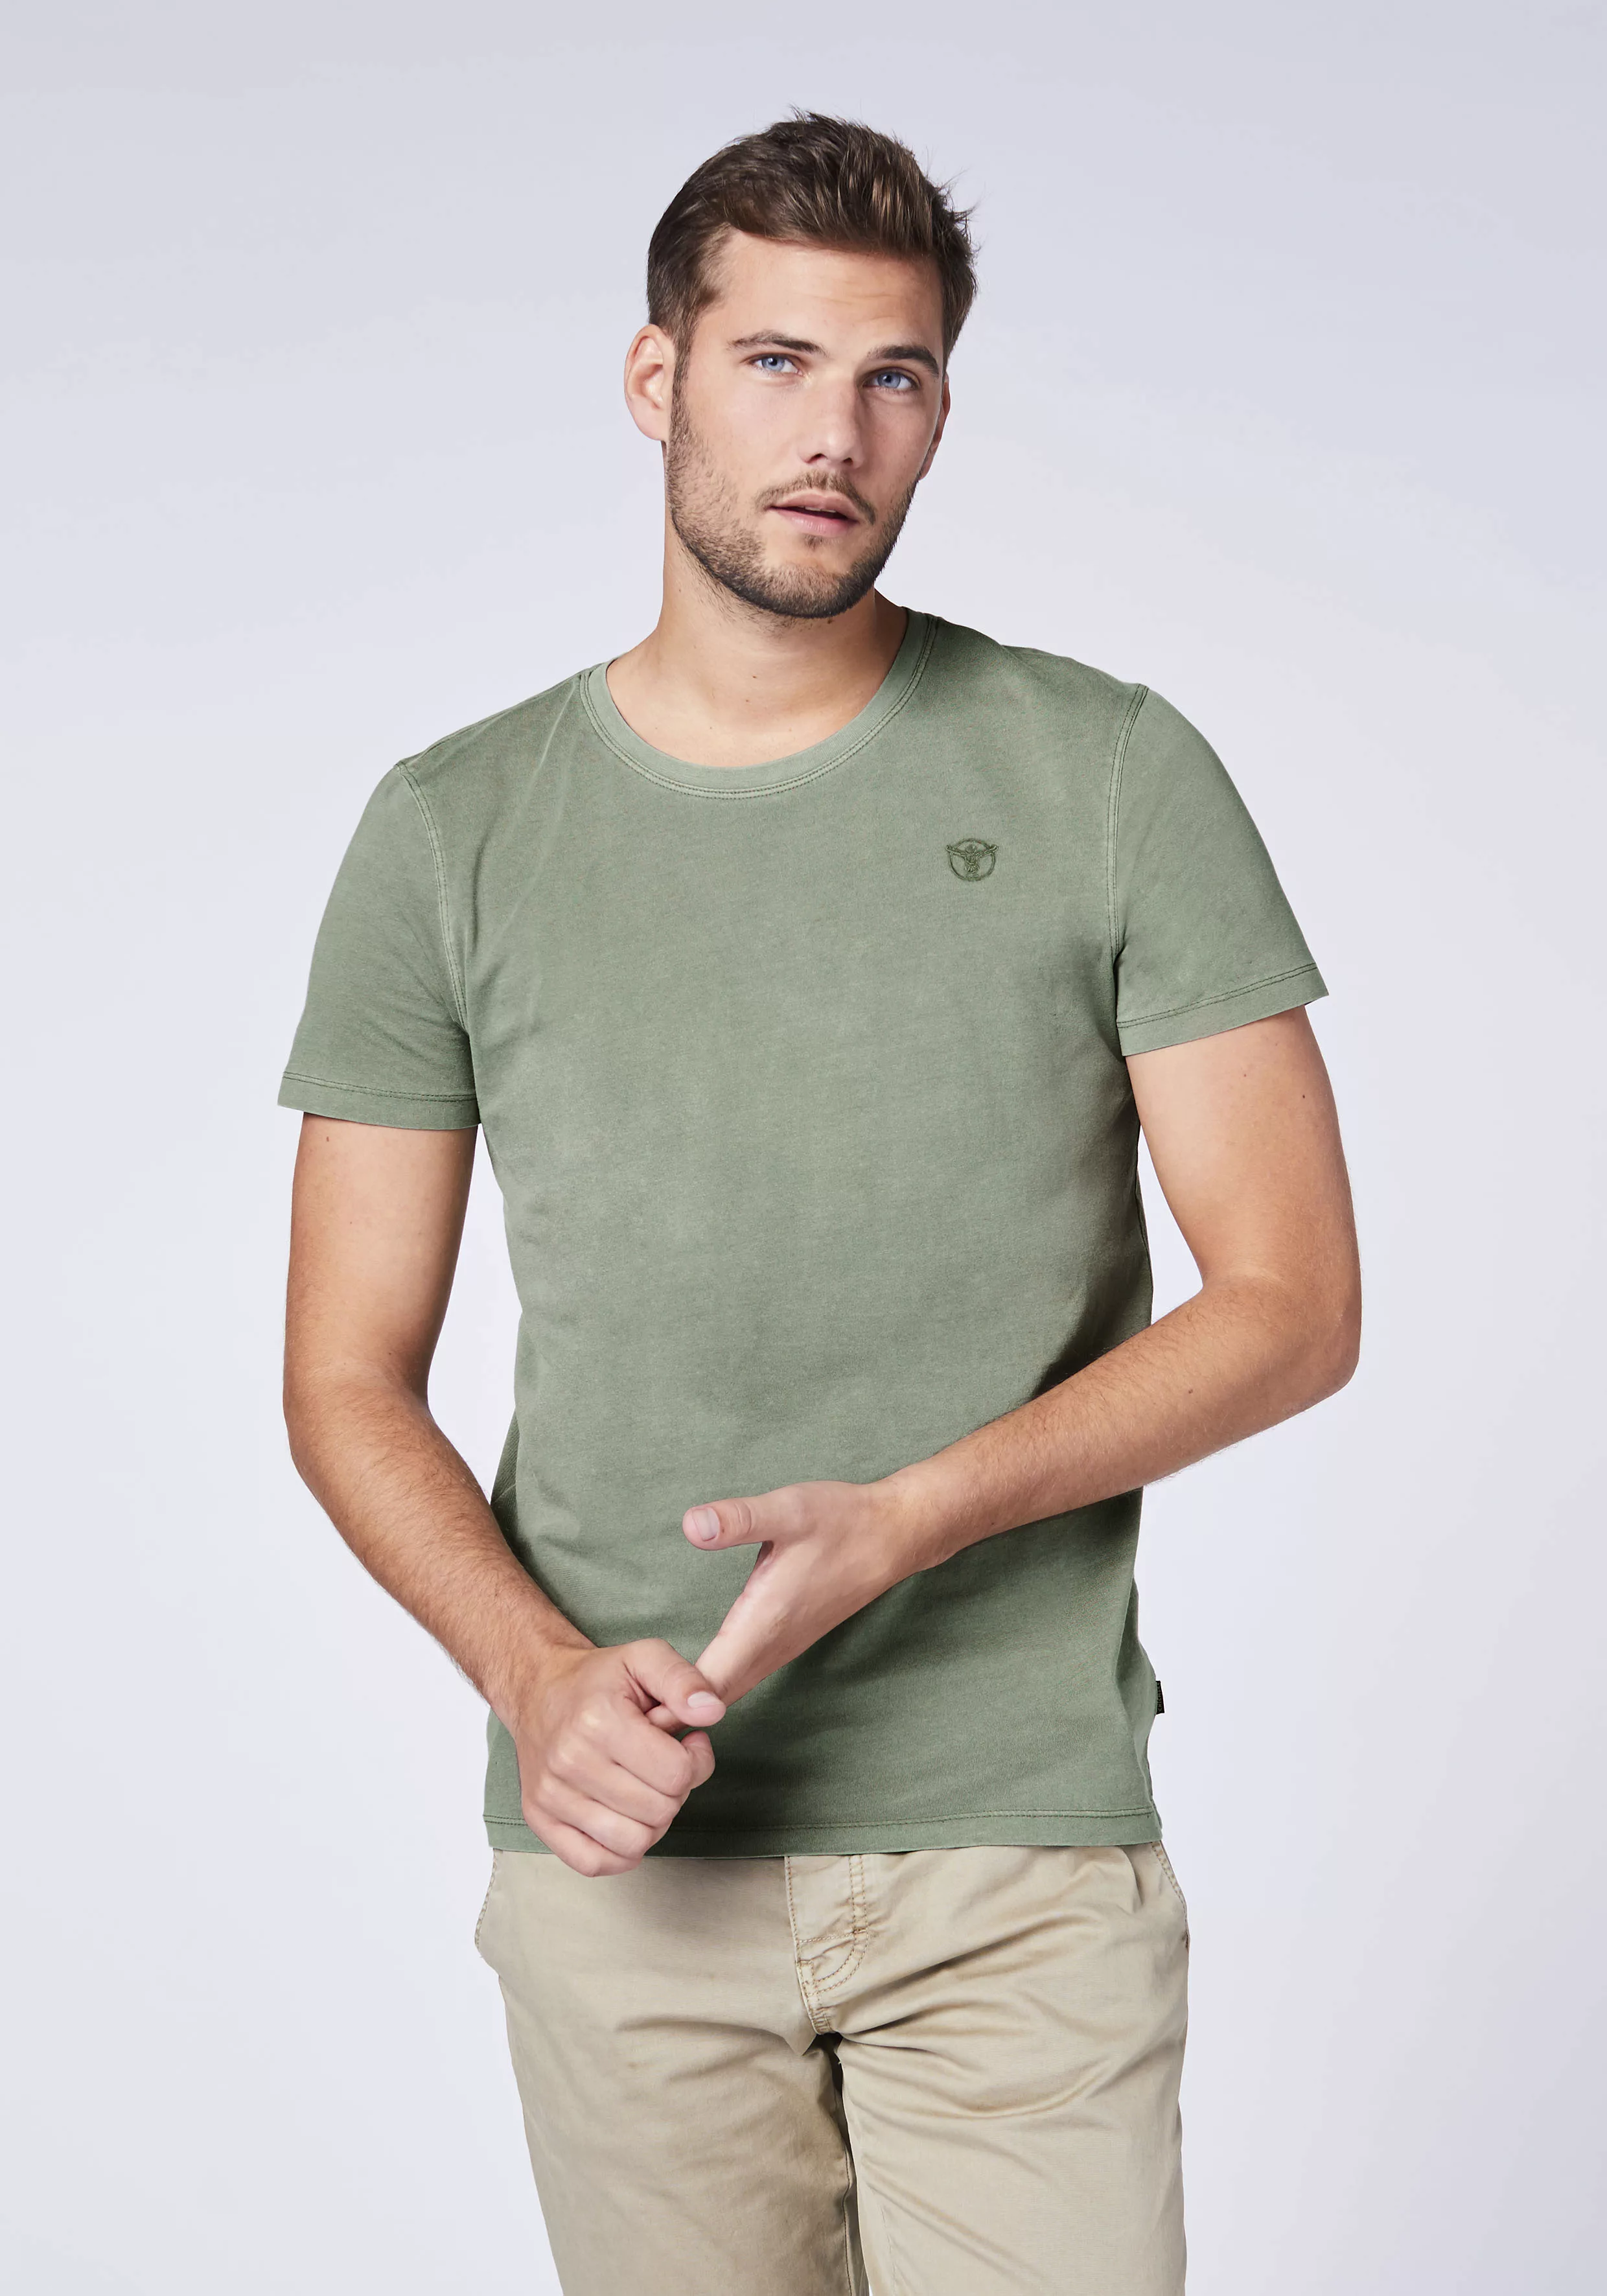 Chiemsee T-Shirt günstig online kaufen